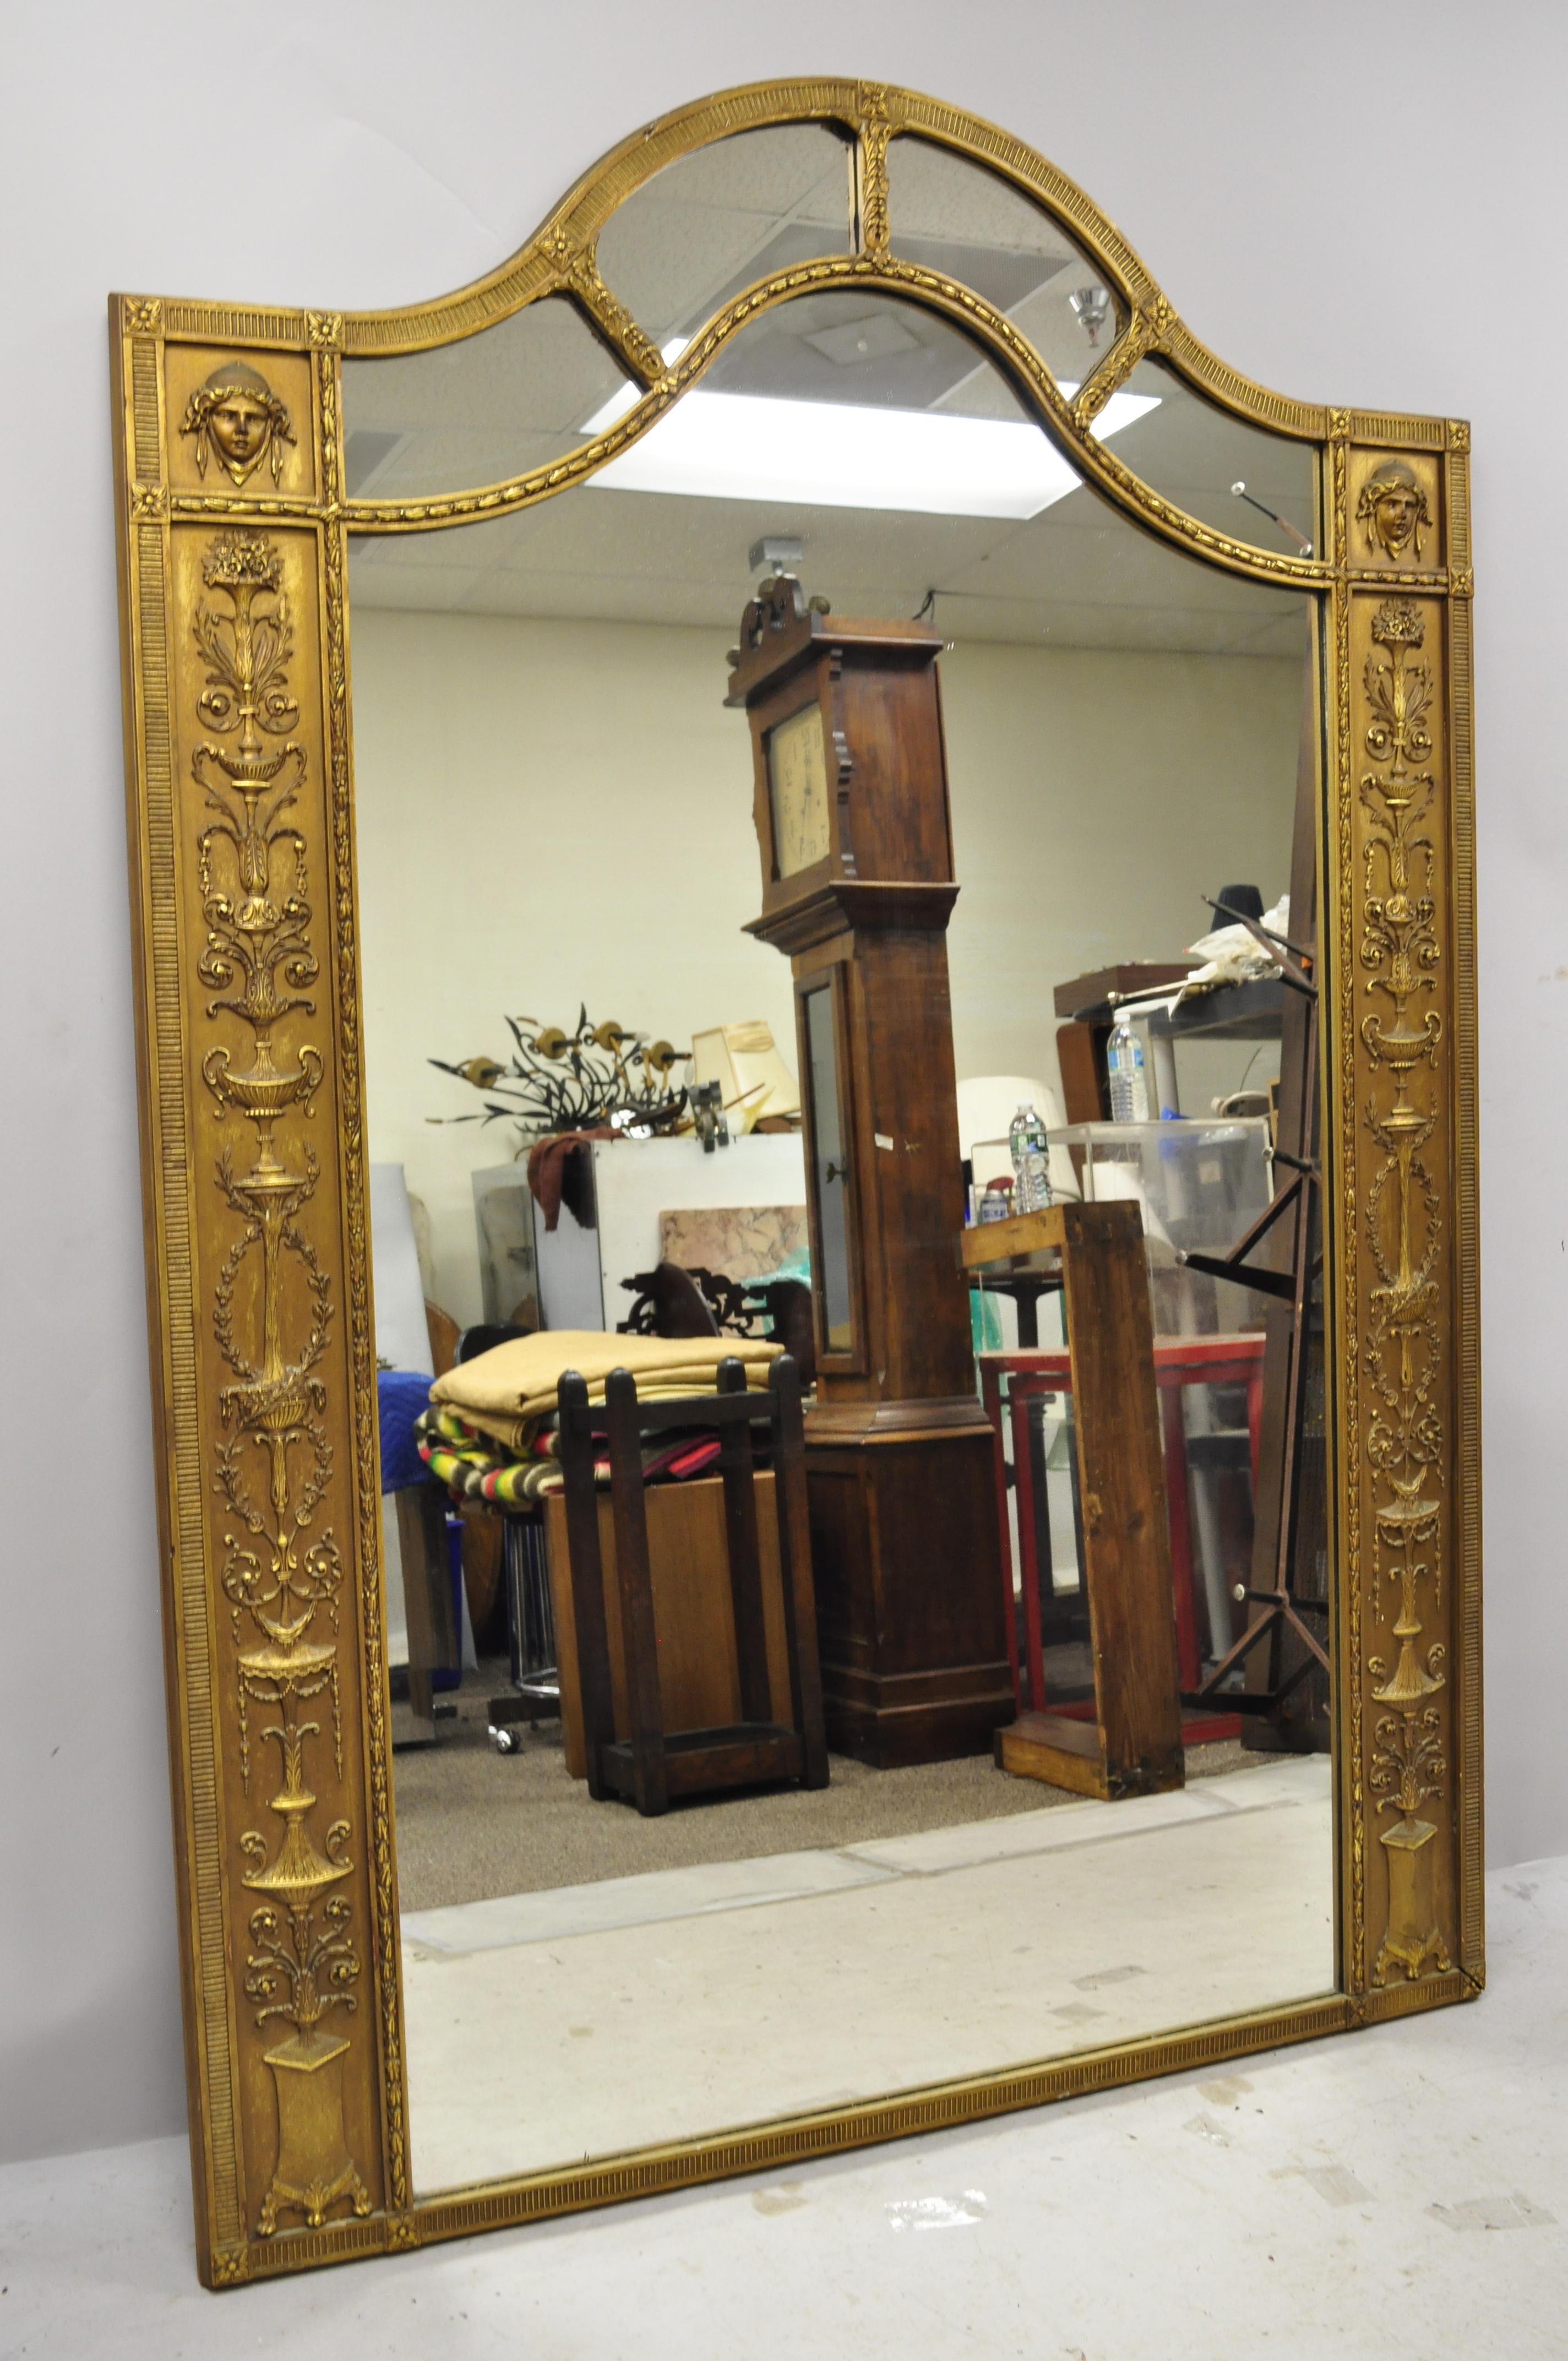 Antique français style néoclassique grand miroir de plancher trumeau golf figural Gesso 76 x 54. L'objet présente une taille impressionnante, des détails figuratifs en gesso doré, des visages de jeunes filles, des urnes et des couronnes, une